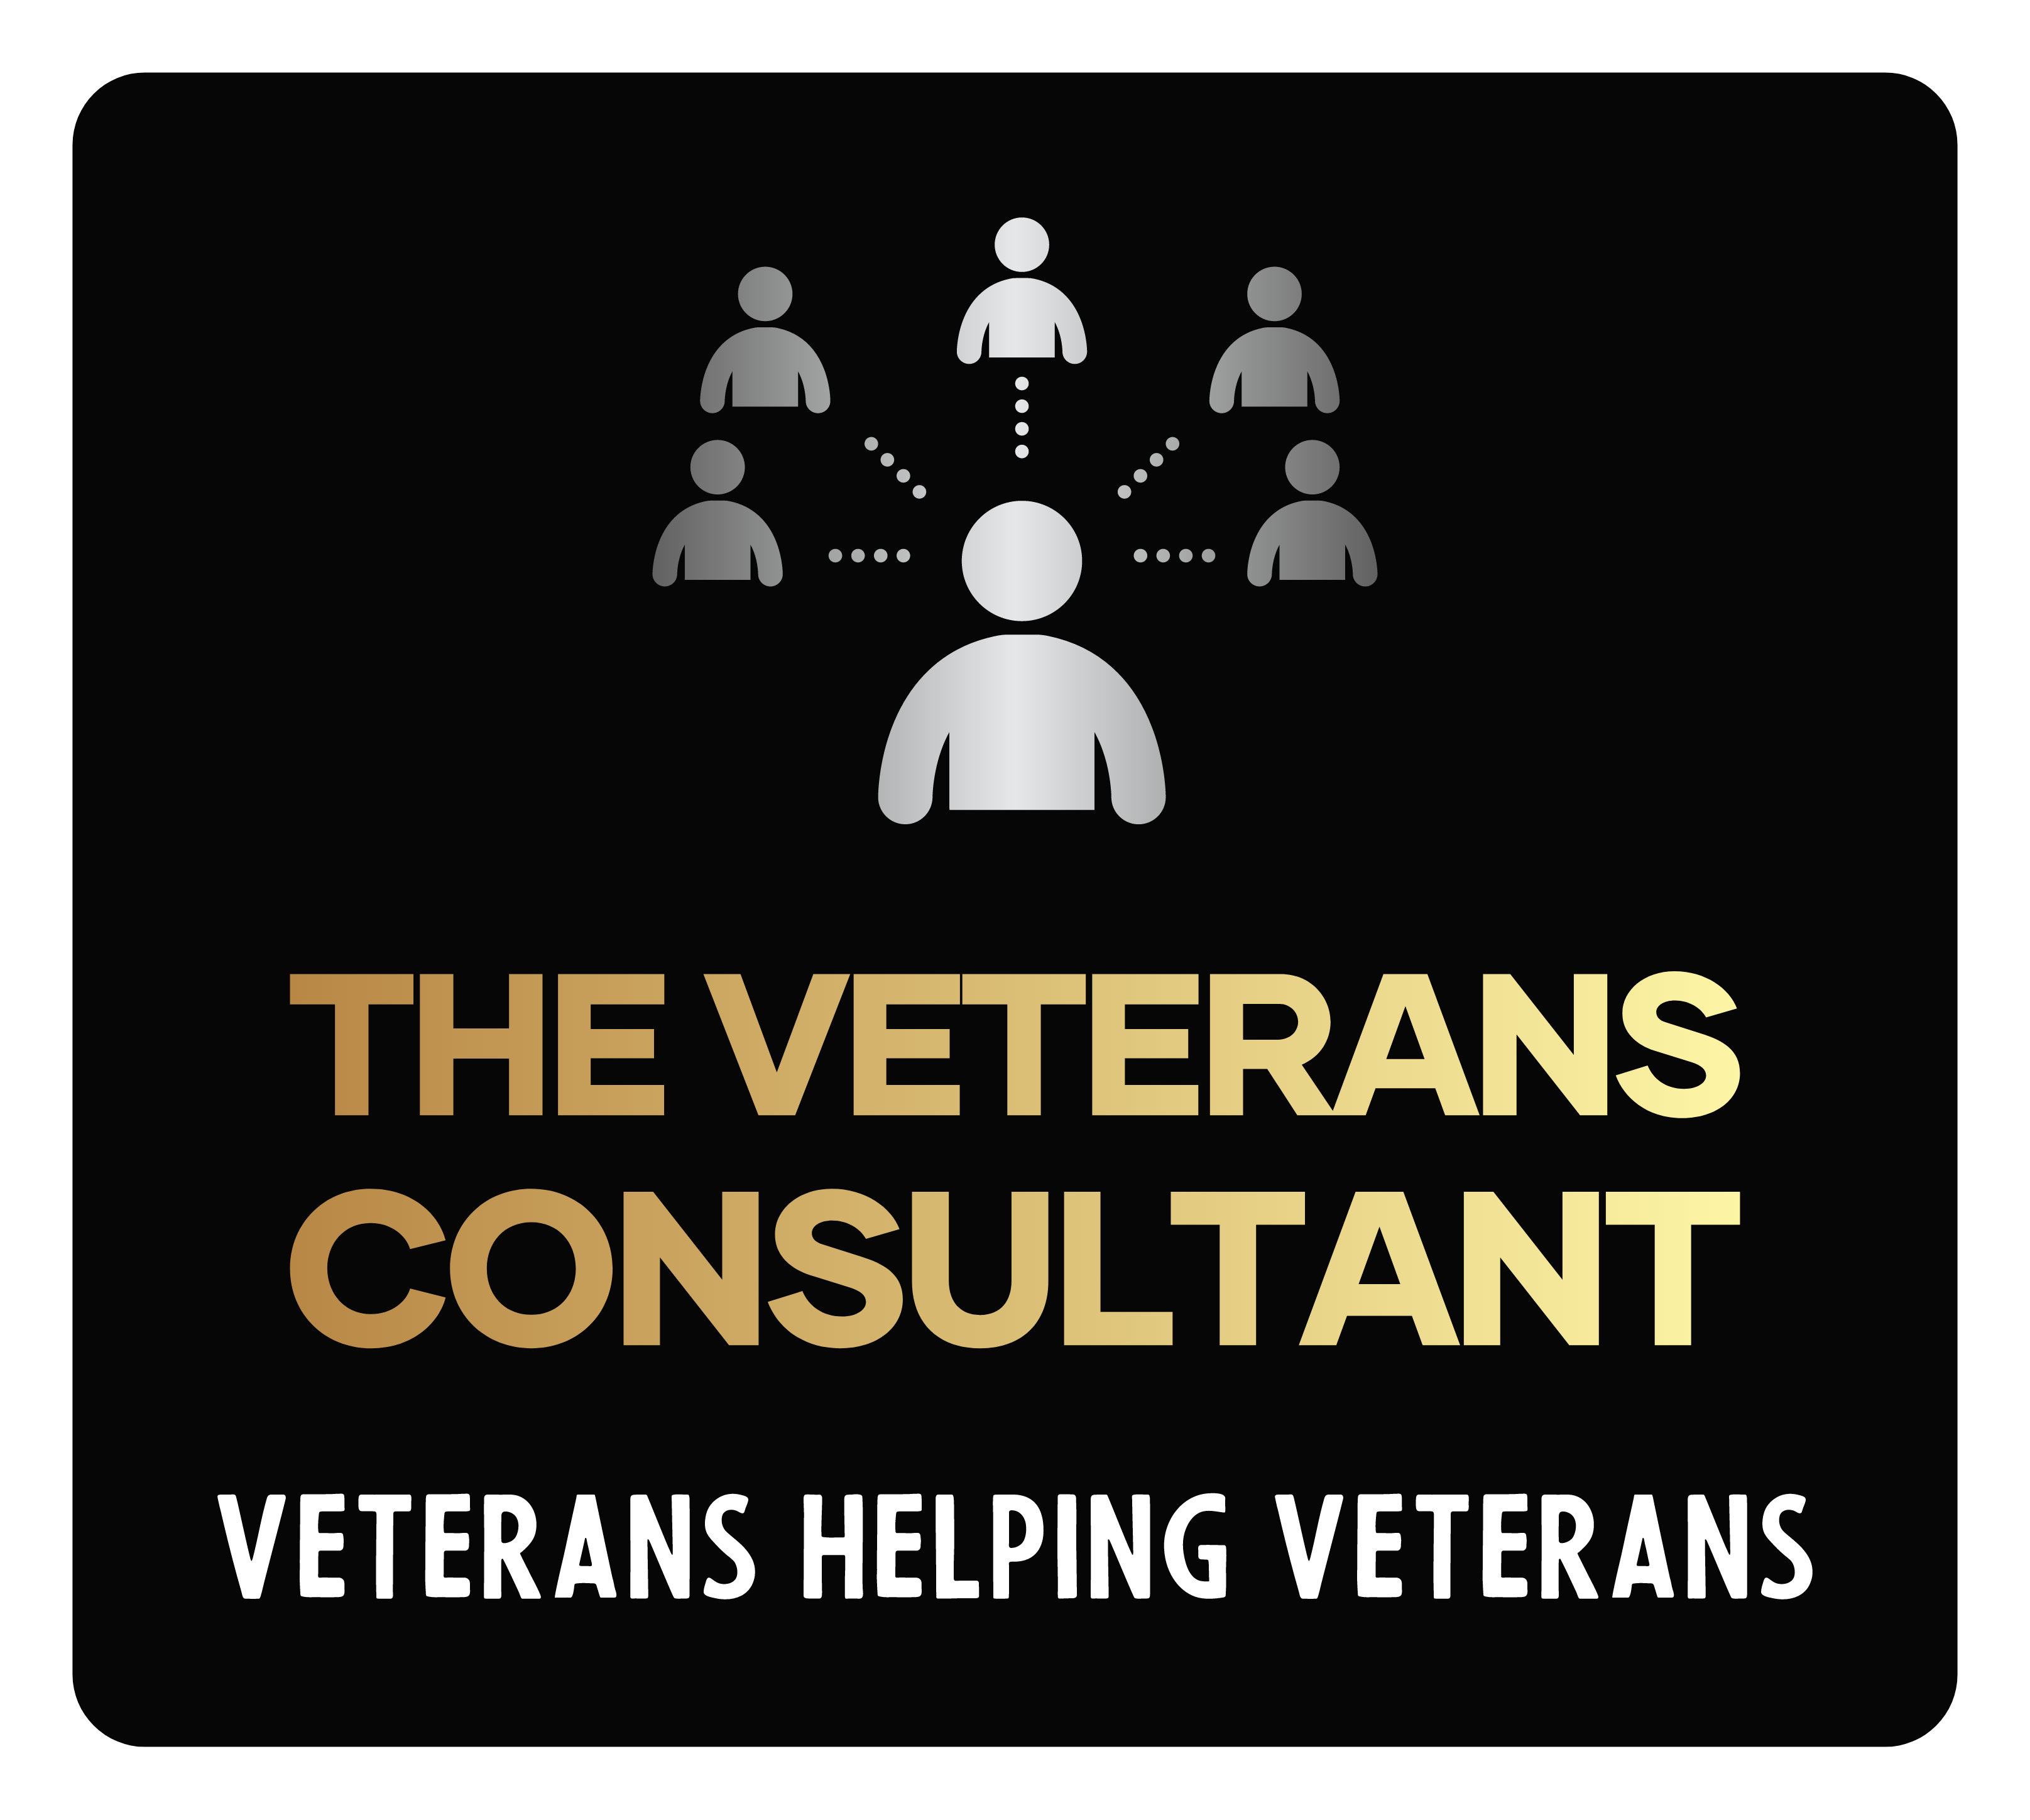 The Veterans Consultant